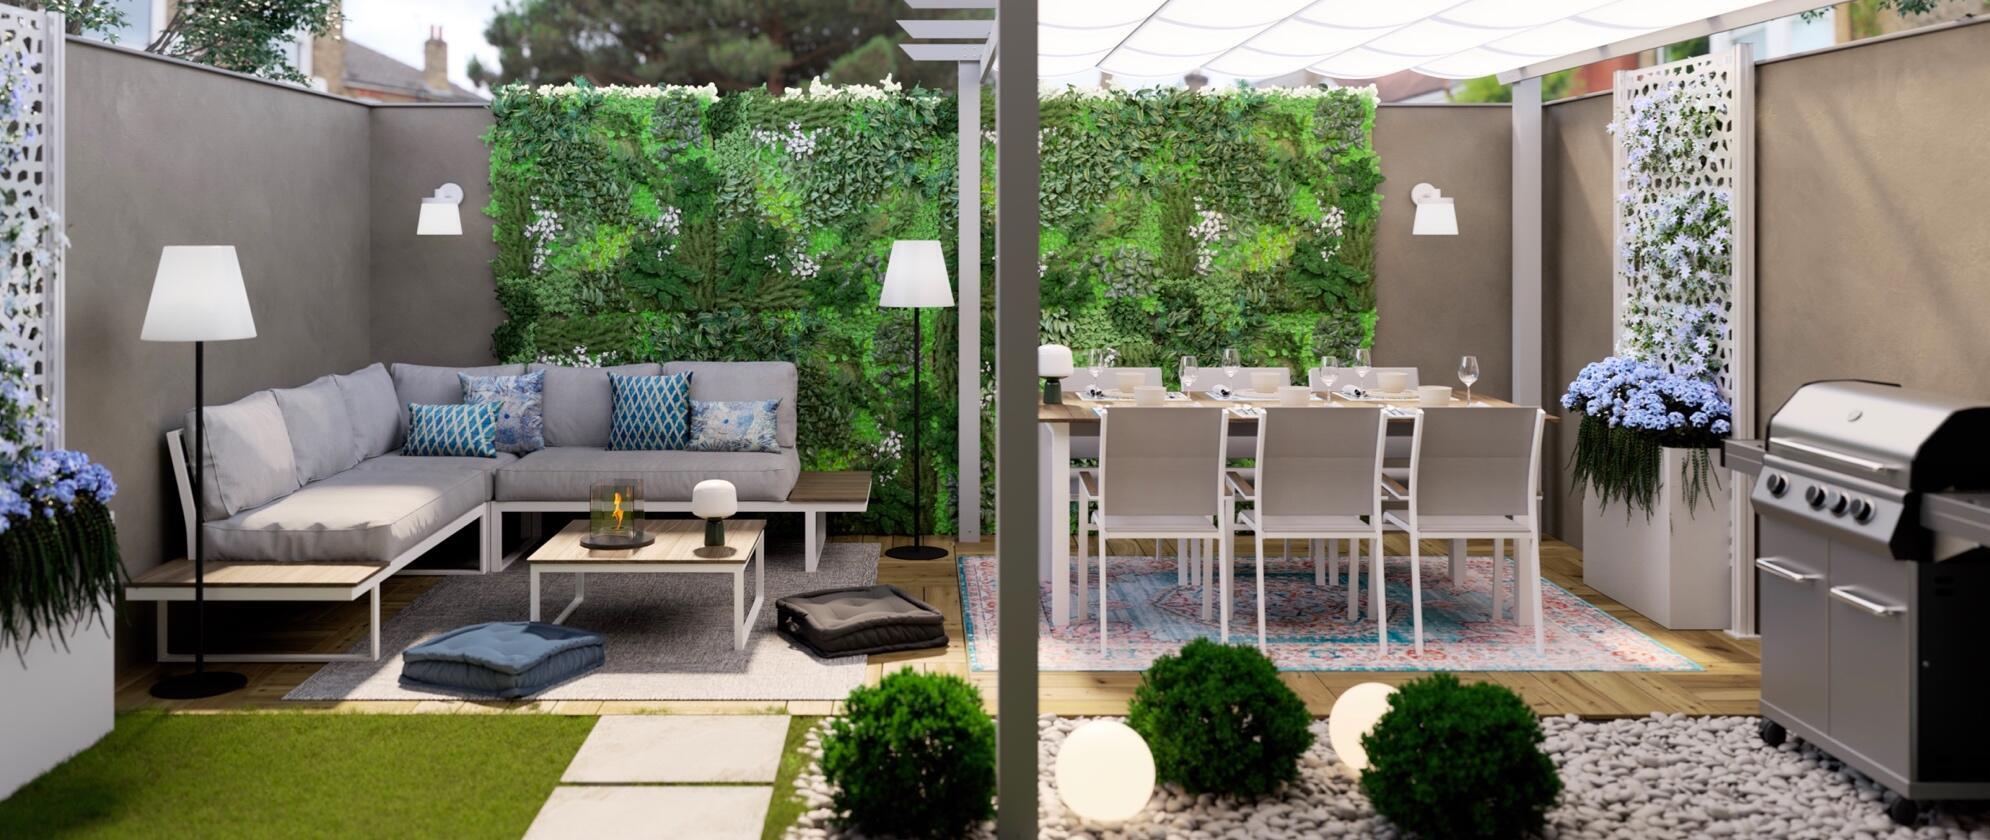 Arredare terrazzo moderno: idee per rinnovare gli spazi esterni con stile